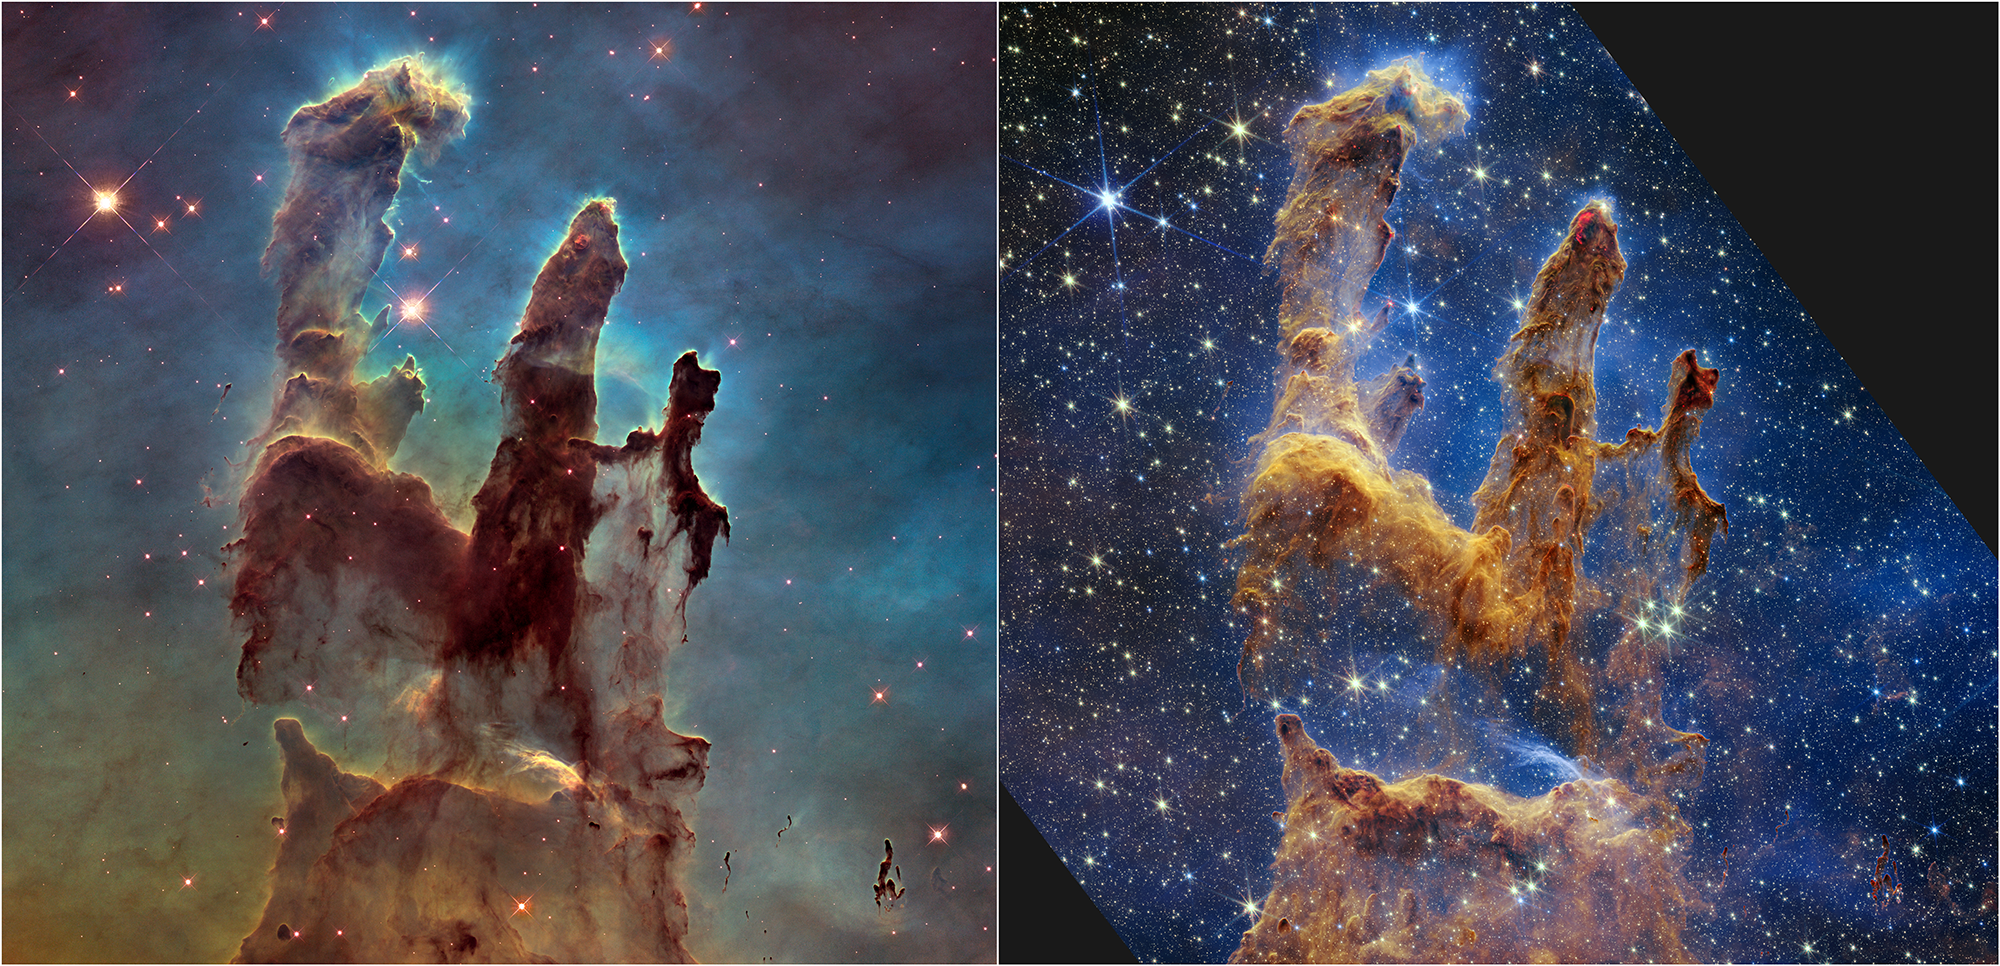 Hubble a rendu les Piliers de la création célèbres en 1995 et a revisité la scène en 2014 avec une vue plus nette et plus large en lumière visible (à gauche). En lumière infrarouge, le JWST (à droite) permet d'observer davantage de poussière dans cette région de formation d'étoiles. Les piliers bruns, épais et poussiéreux, ne sont plus aussi opaques; de nombreuses étoiles rouges encore en formation apparaissent. [NASA, ESA, CSA, STScI, Hubble Heritage Project (STScI, AURA) - Joseph DePasquale (STScI), Anton M. Koekemoer (STScI), Alyssa Pagan (STScI)]